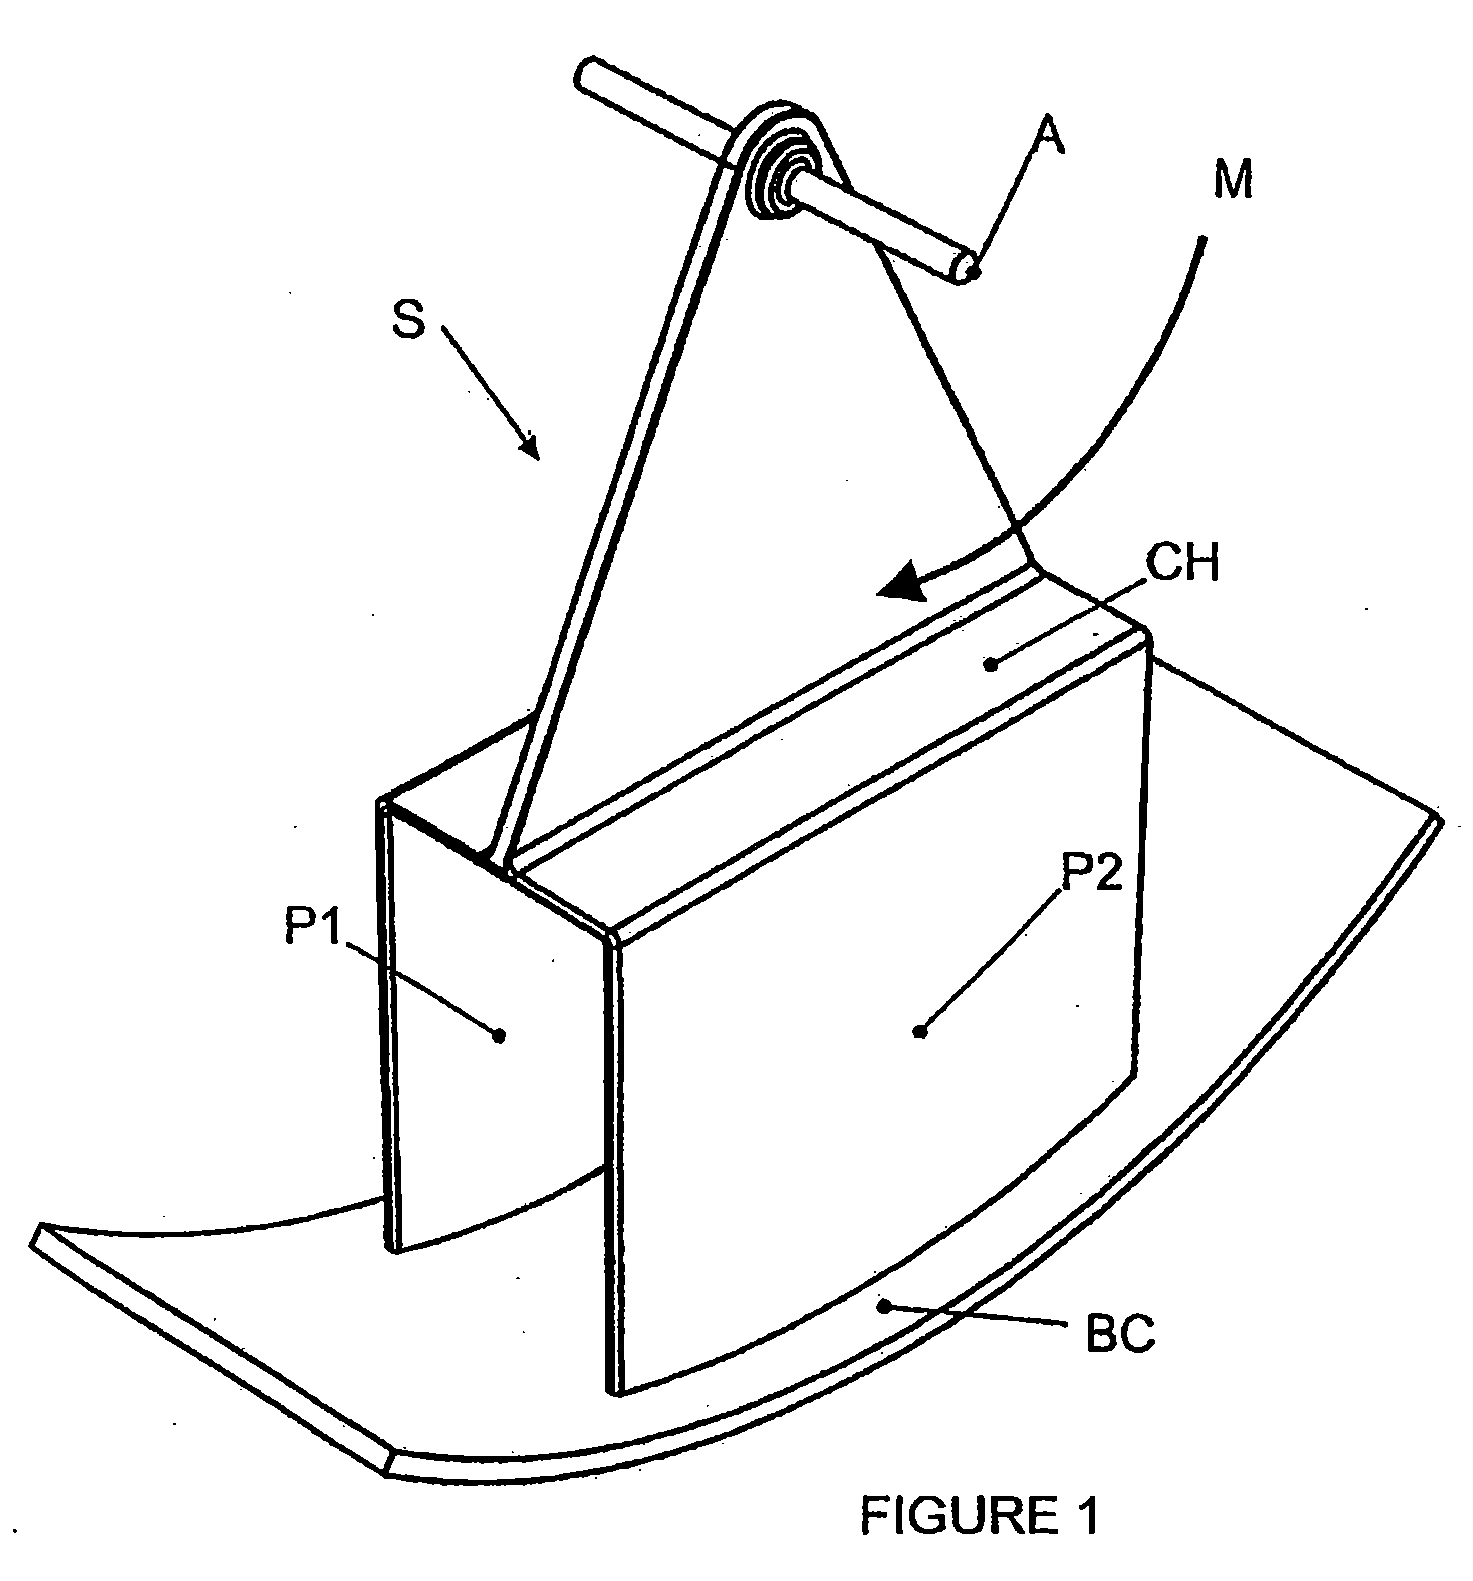 Cross-Belt Sampler for Materials Conveyed on a Belt Conveyor